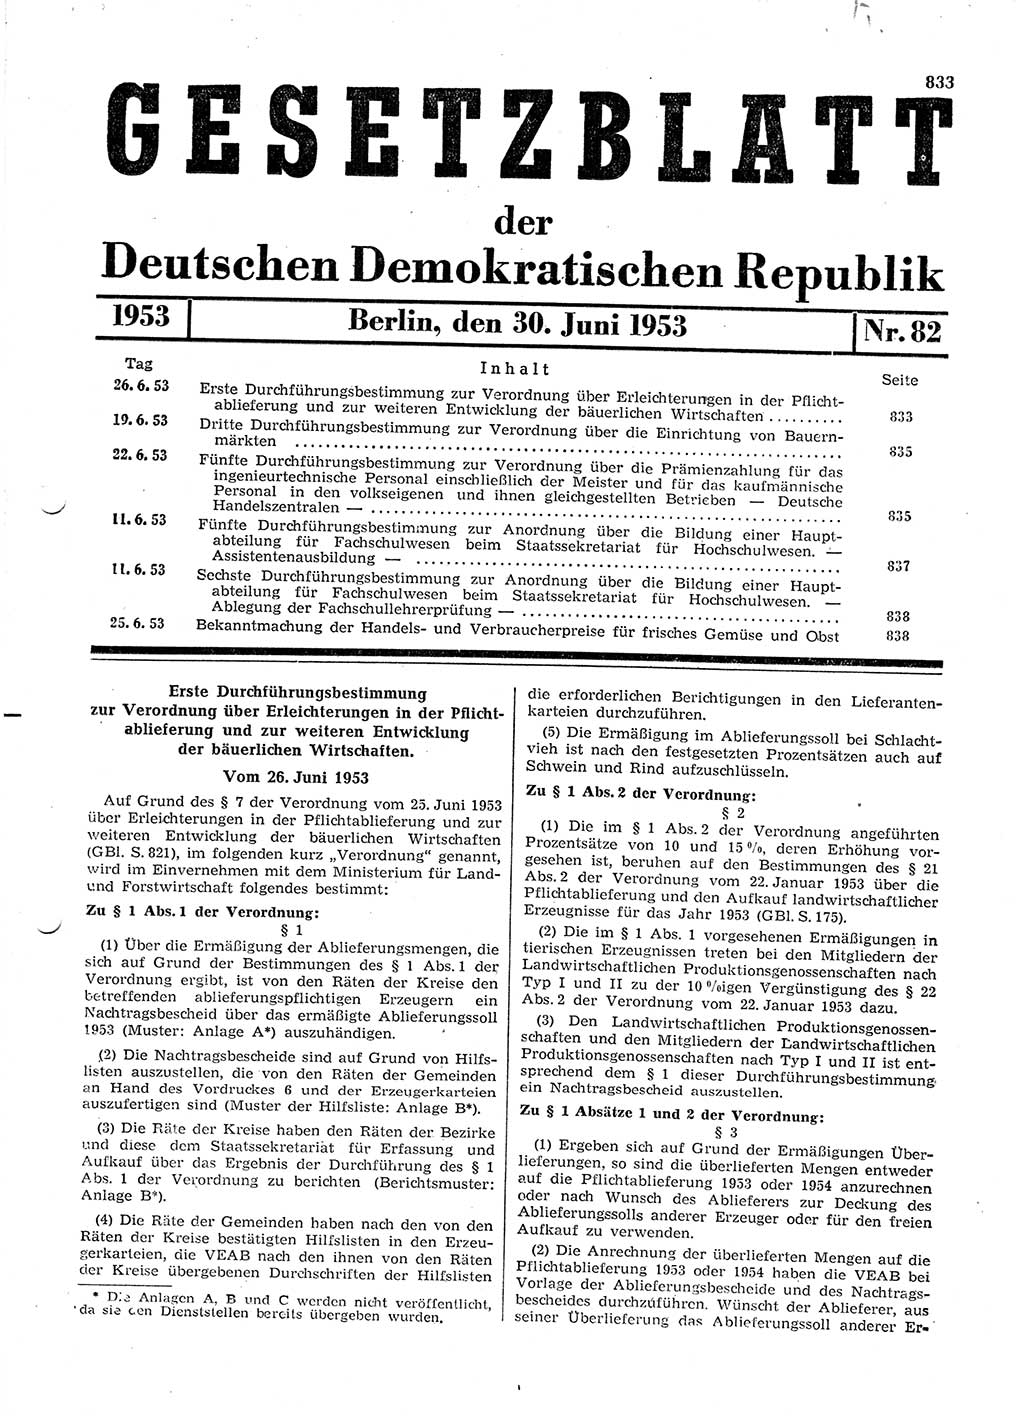 Gesetzblatt (GBl.) der Deutschen Demokratischen Republik (DDR) 1953, Seite 833 (GBl. DDR 1953, S. 833)